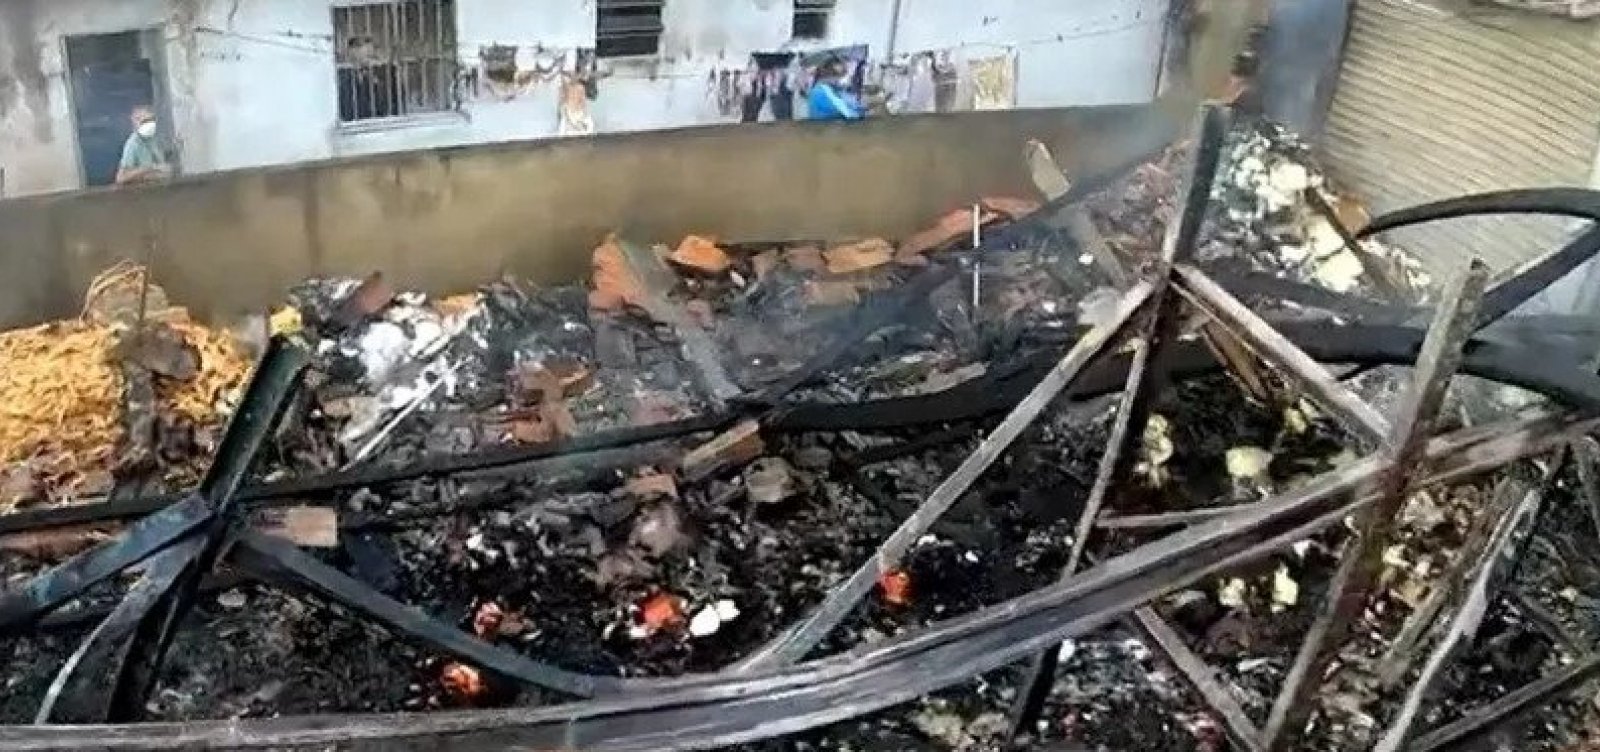 Galpão pega fogo no bairro de Águas Claras, em Salvador